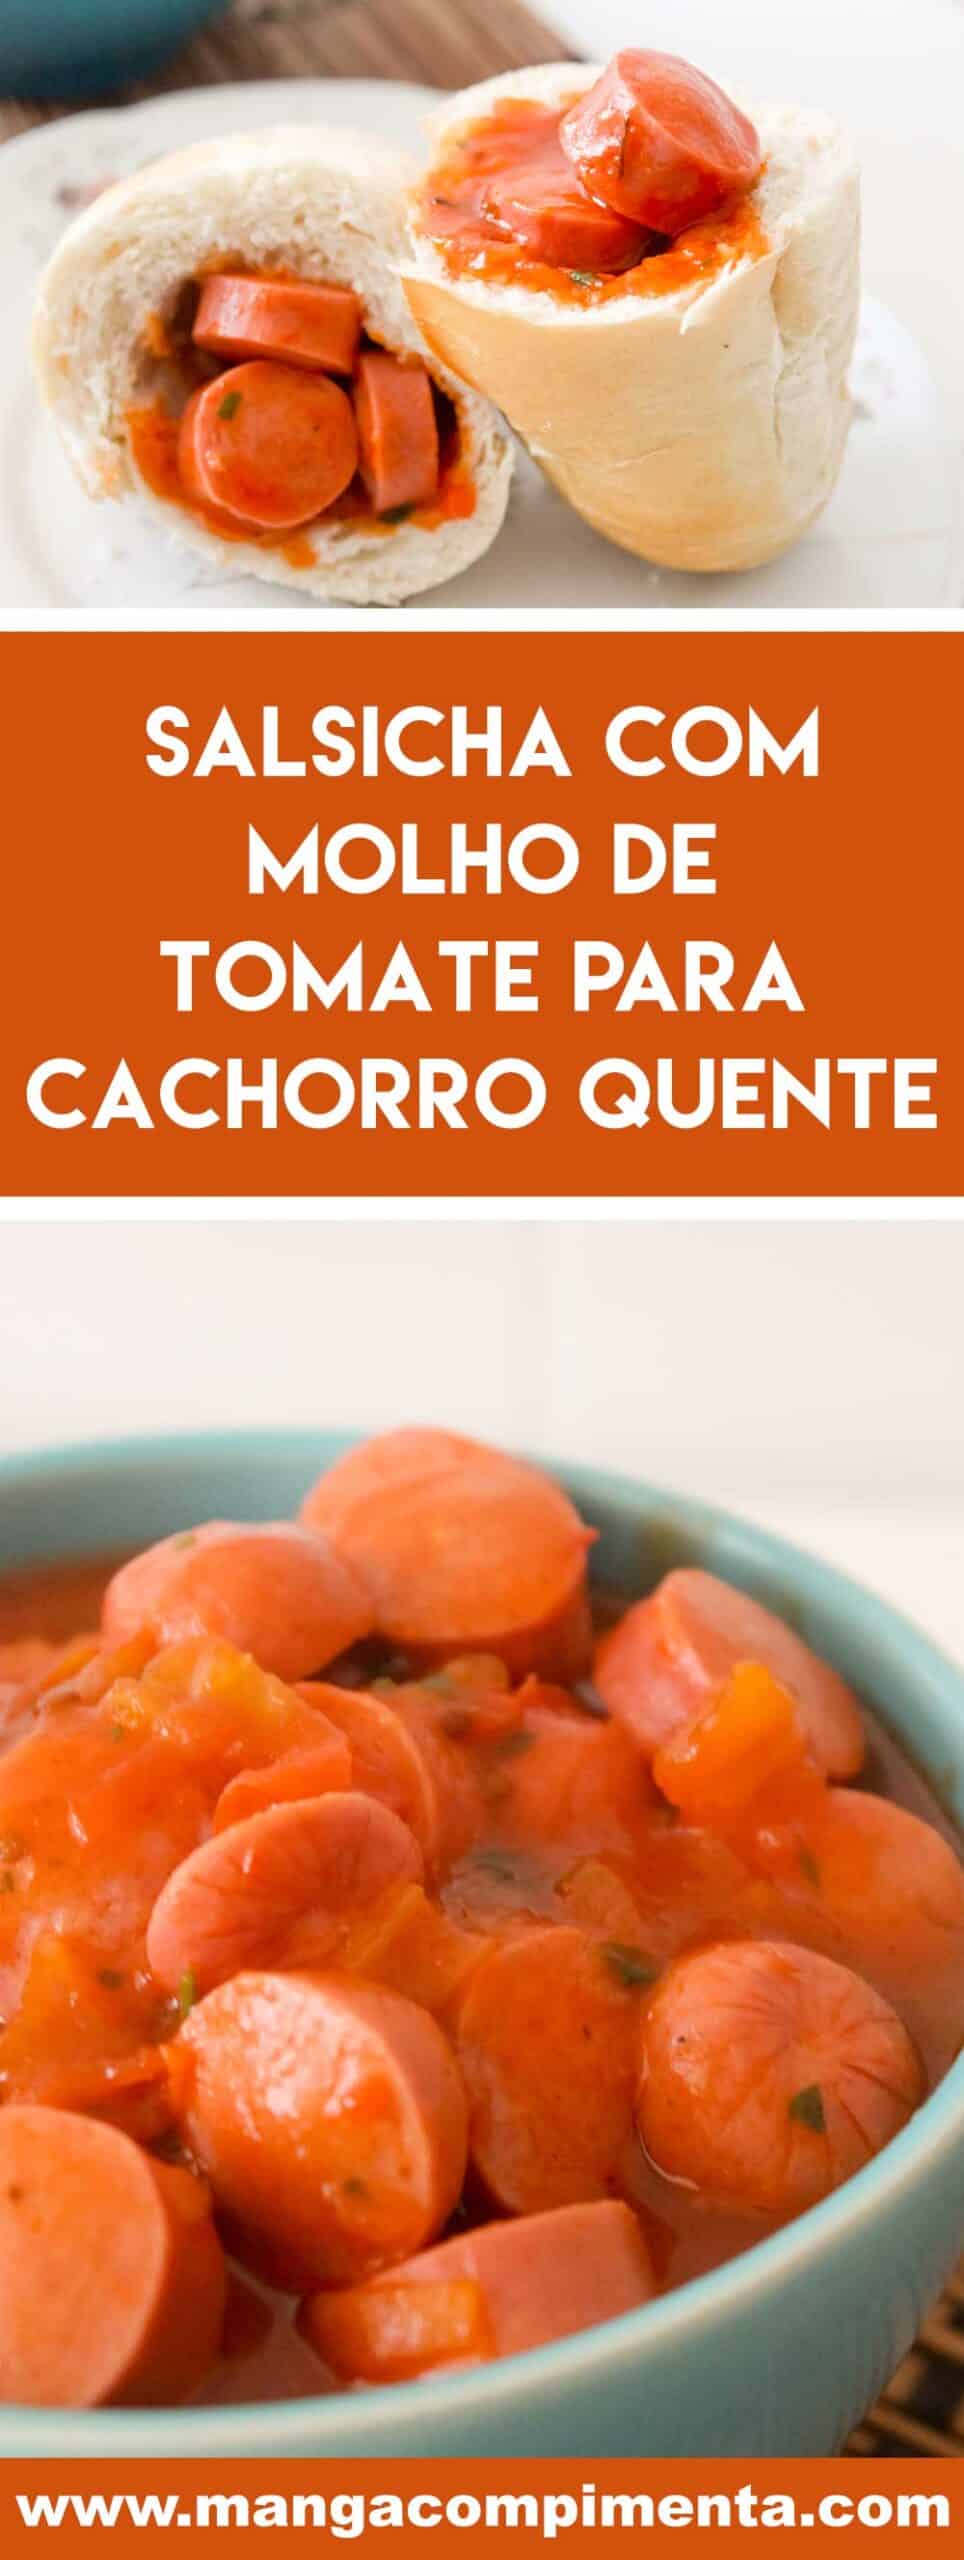 Receita de Salsicha com Molho de Tomate para cachorro quente - prepare essa delícia para o lanche da galerinha.